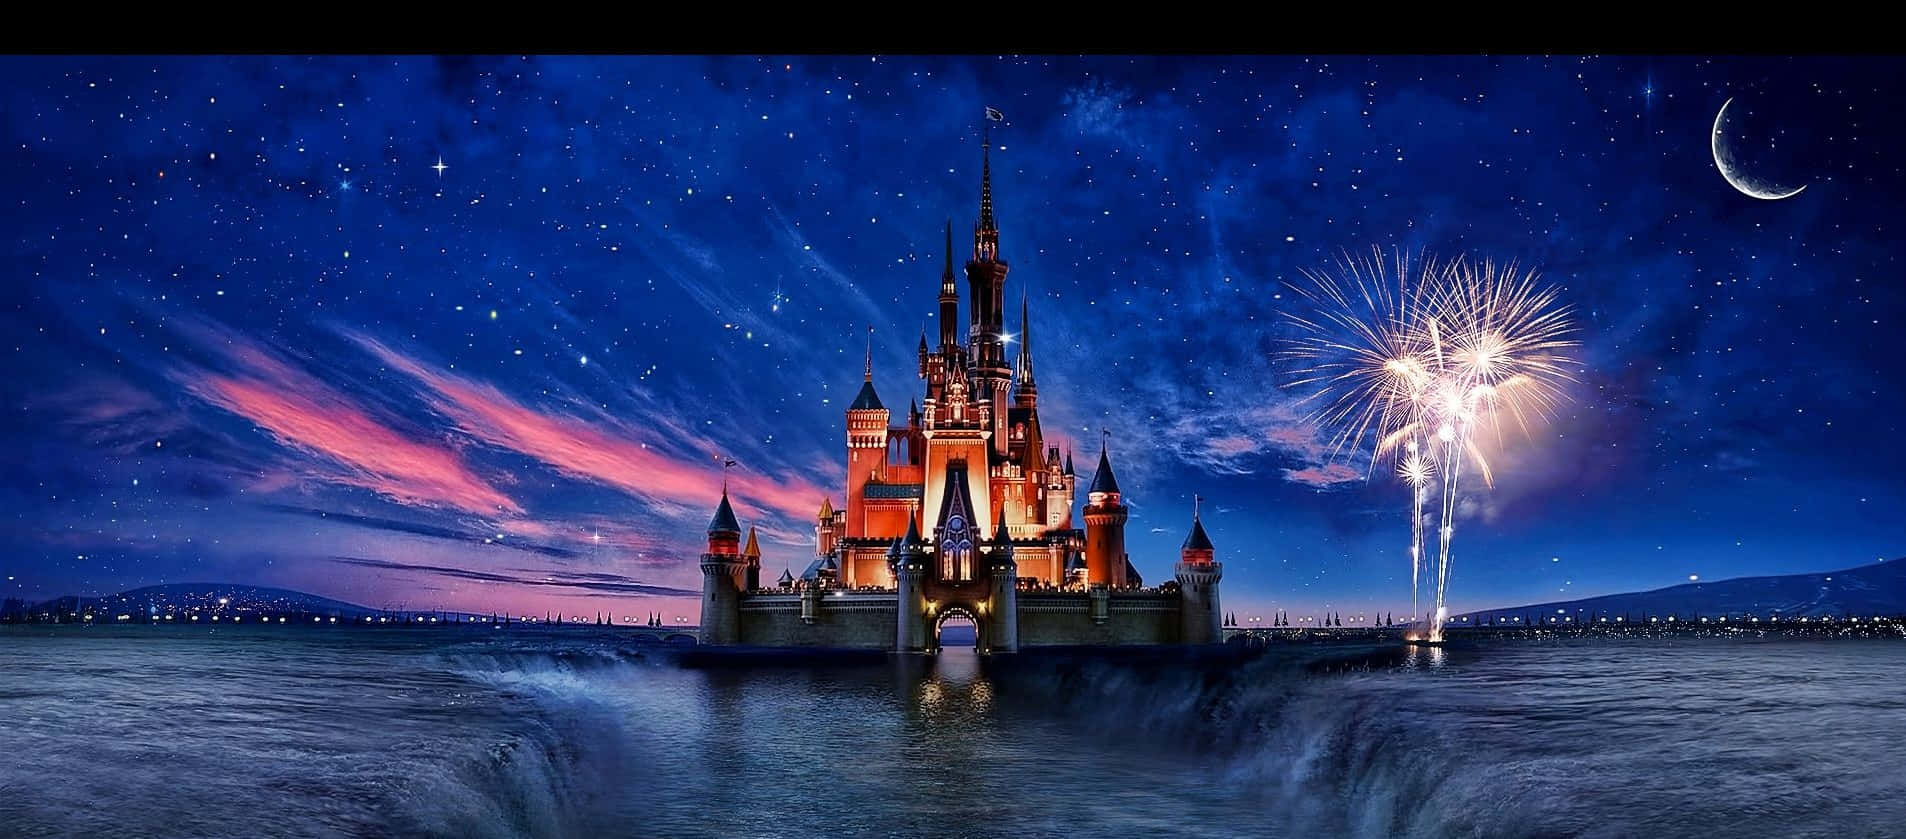 Tauchensie Ein In Die Magie Von Disneyland Mit Einem Blick Auf Das Ikonische Schloss.